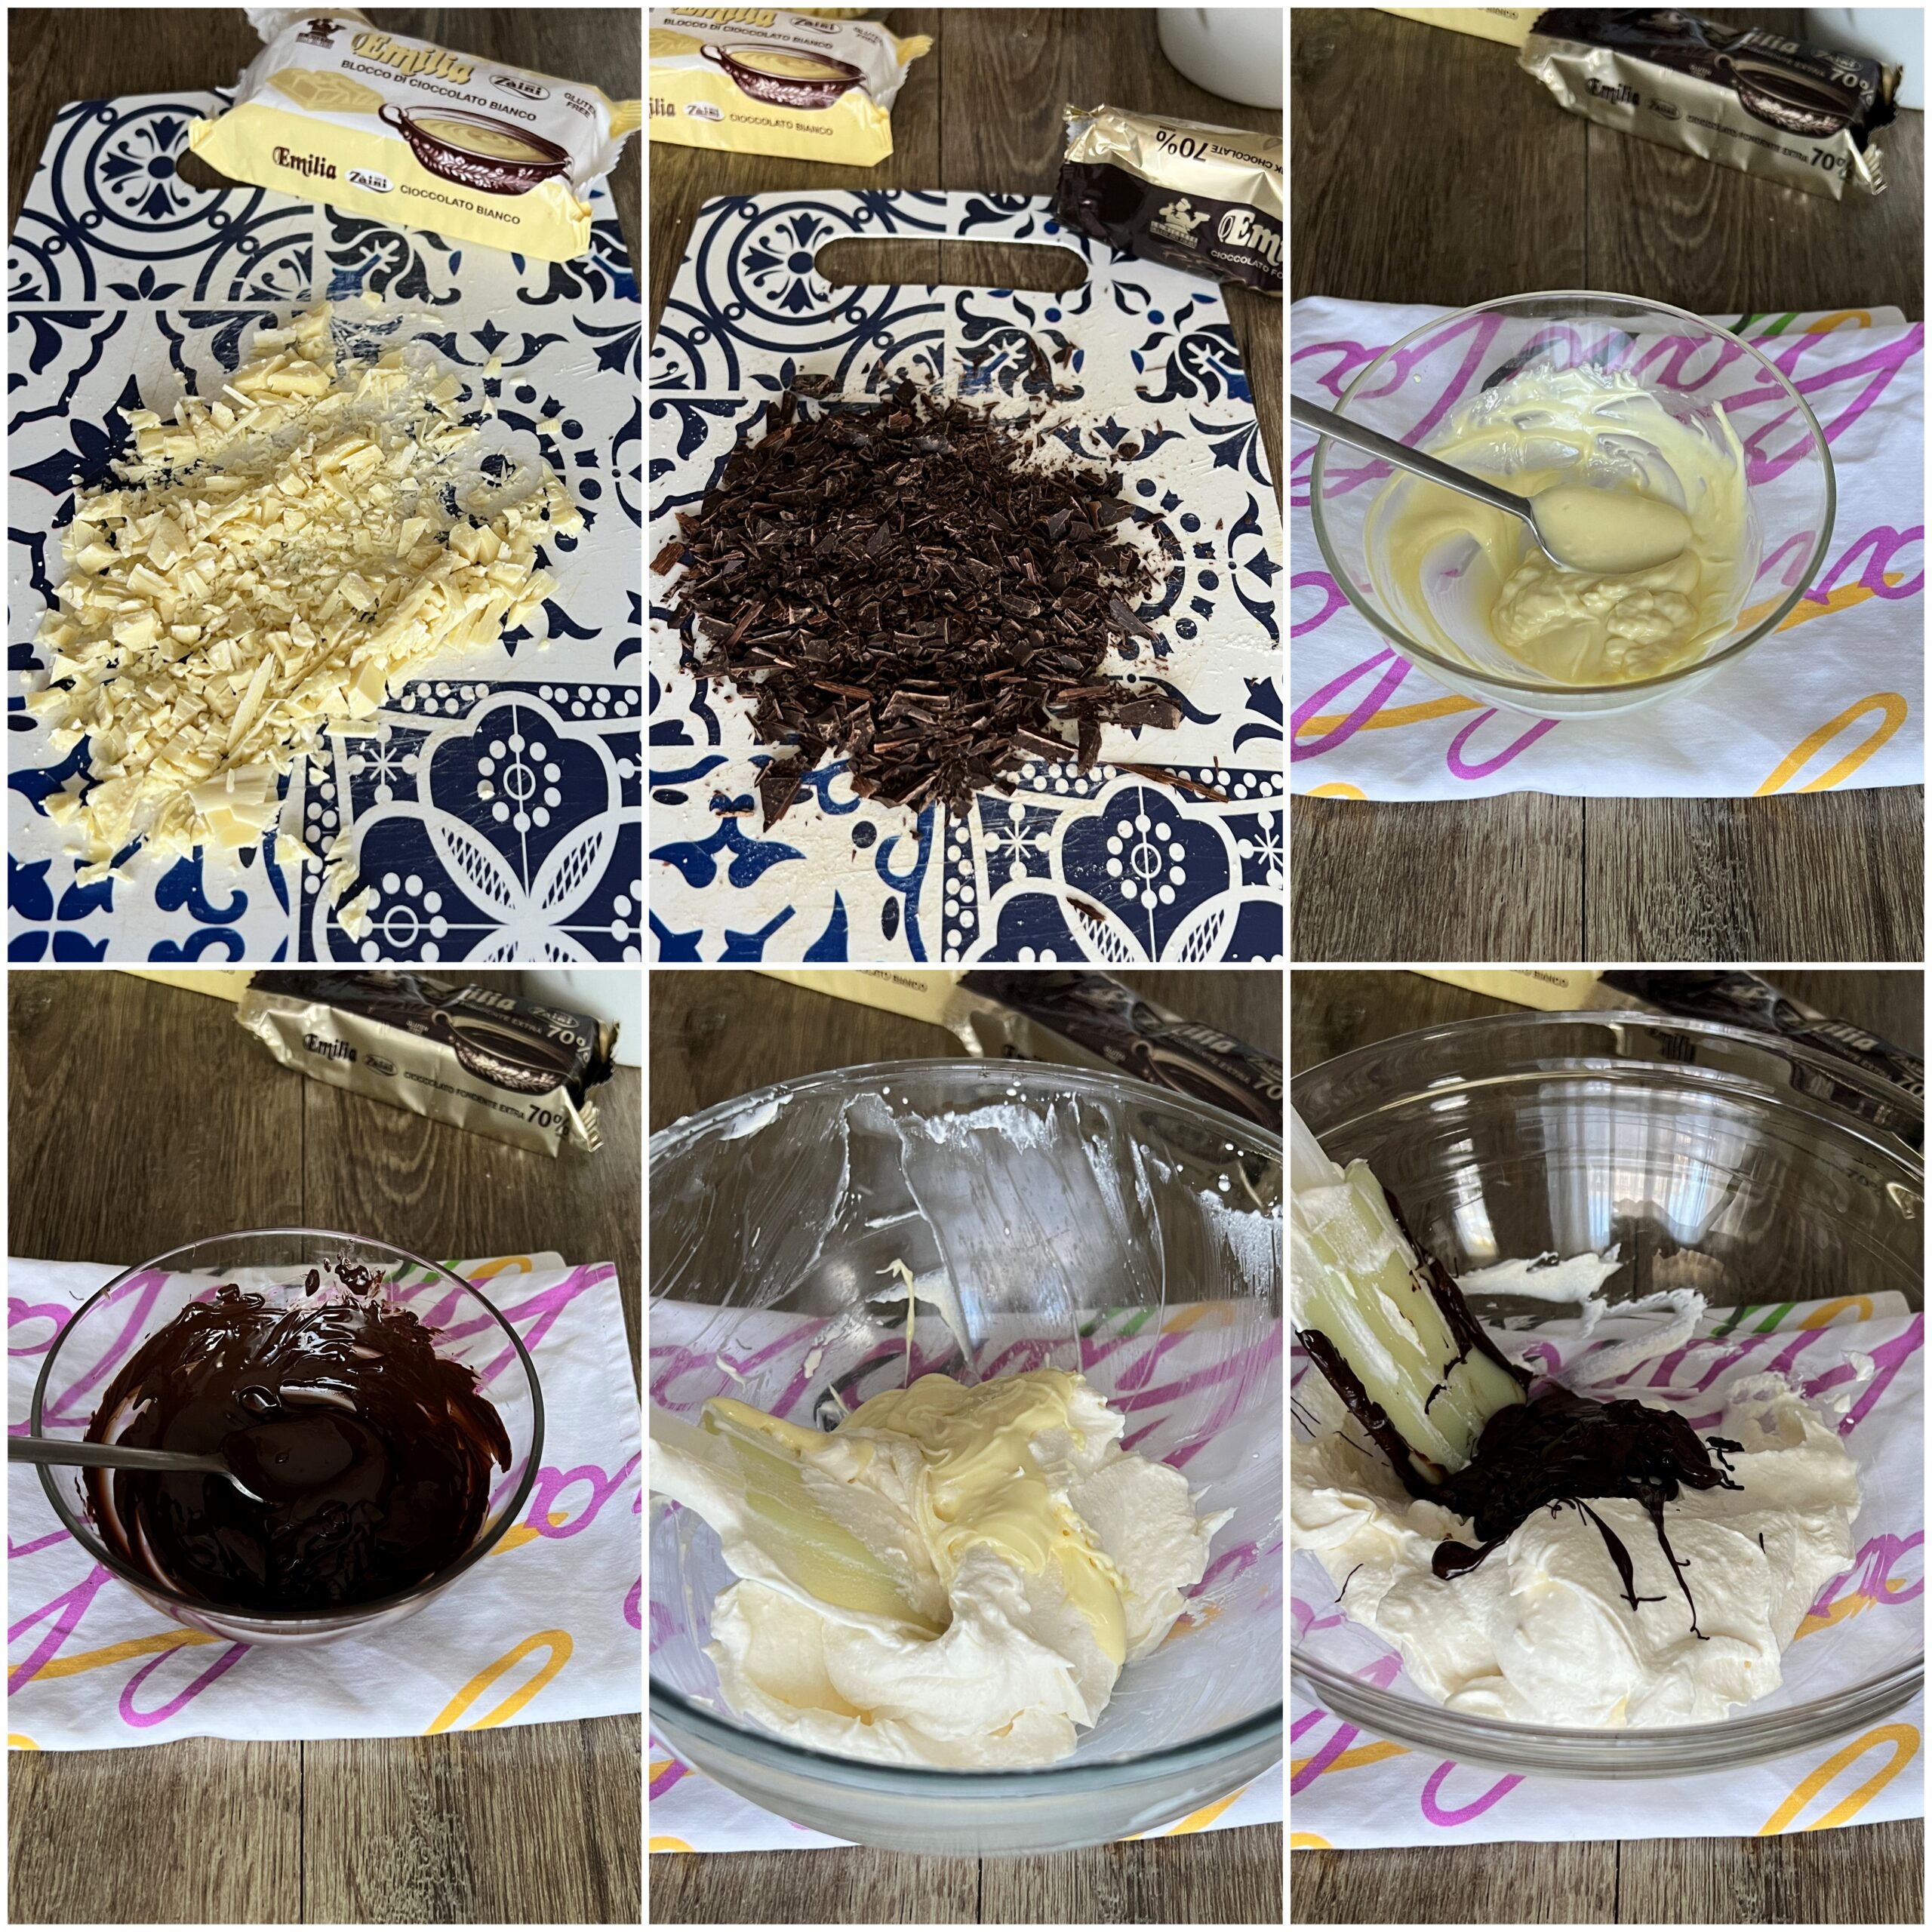 Lingotto al cioccolato bi gusto senza glutine - La Cassata Celiaca